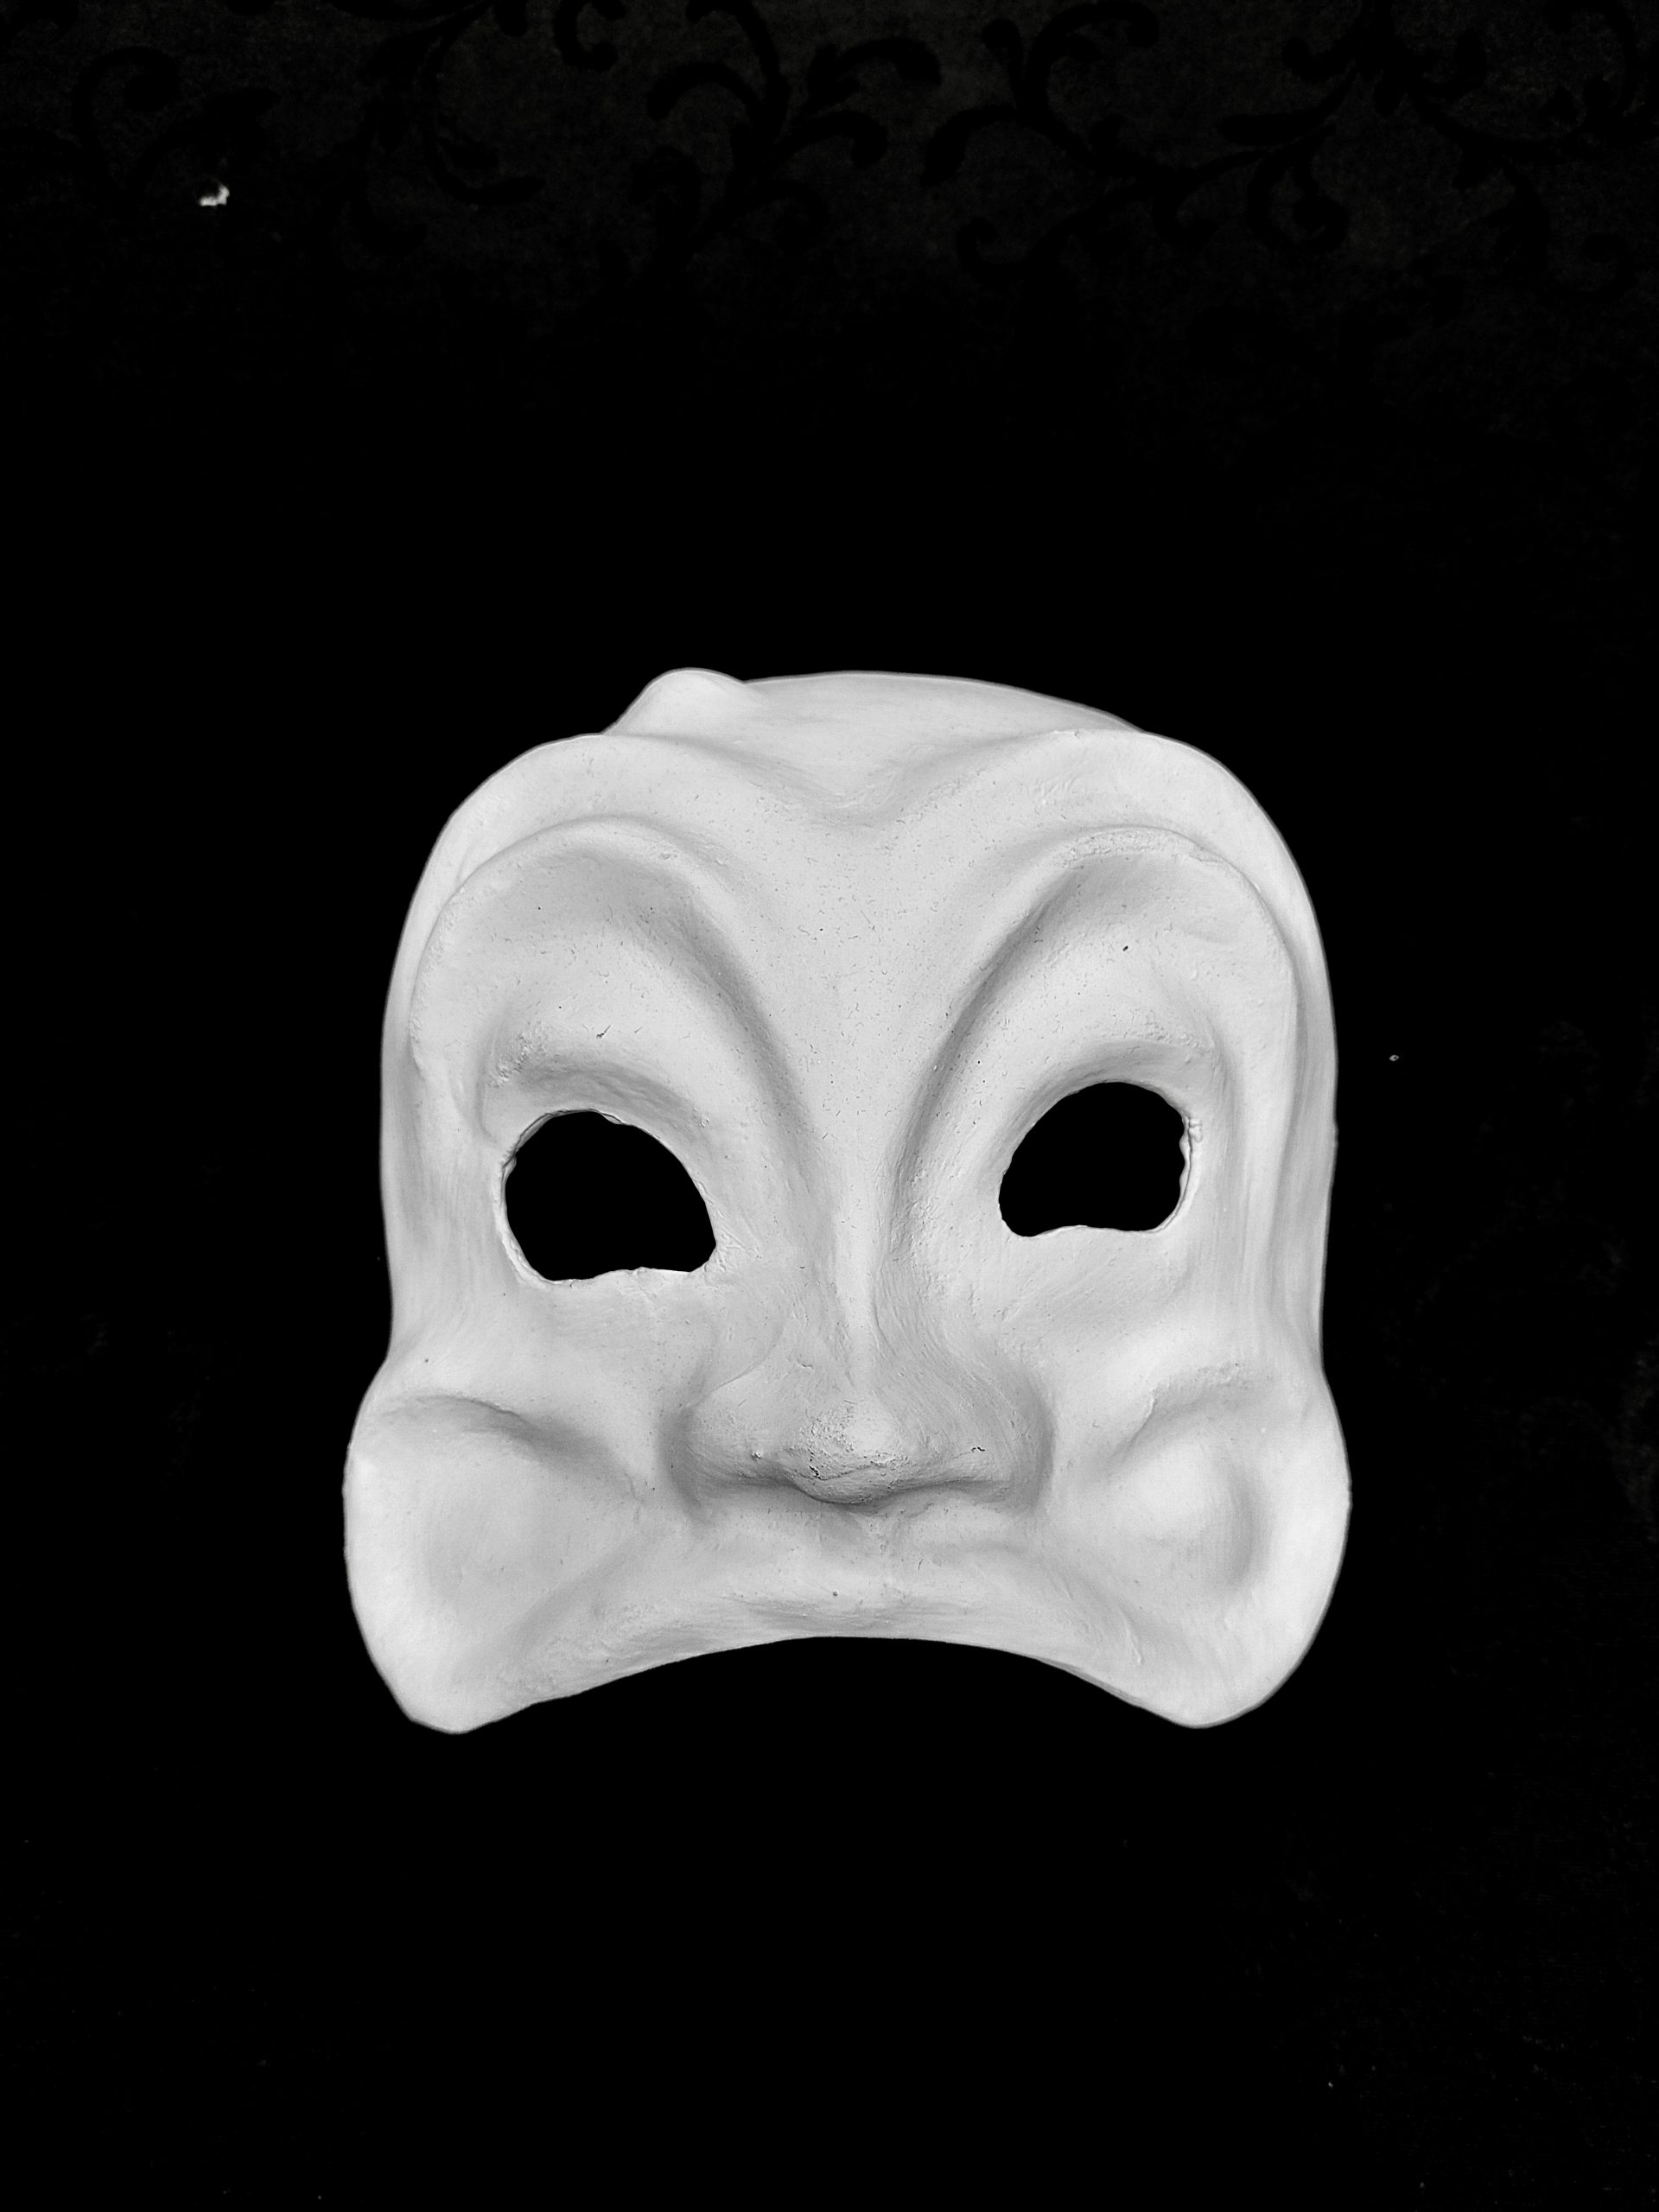 dagsorden Uskyldig samarbejde Harlequin Mask - Reflections Mask Venezia